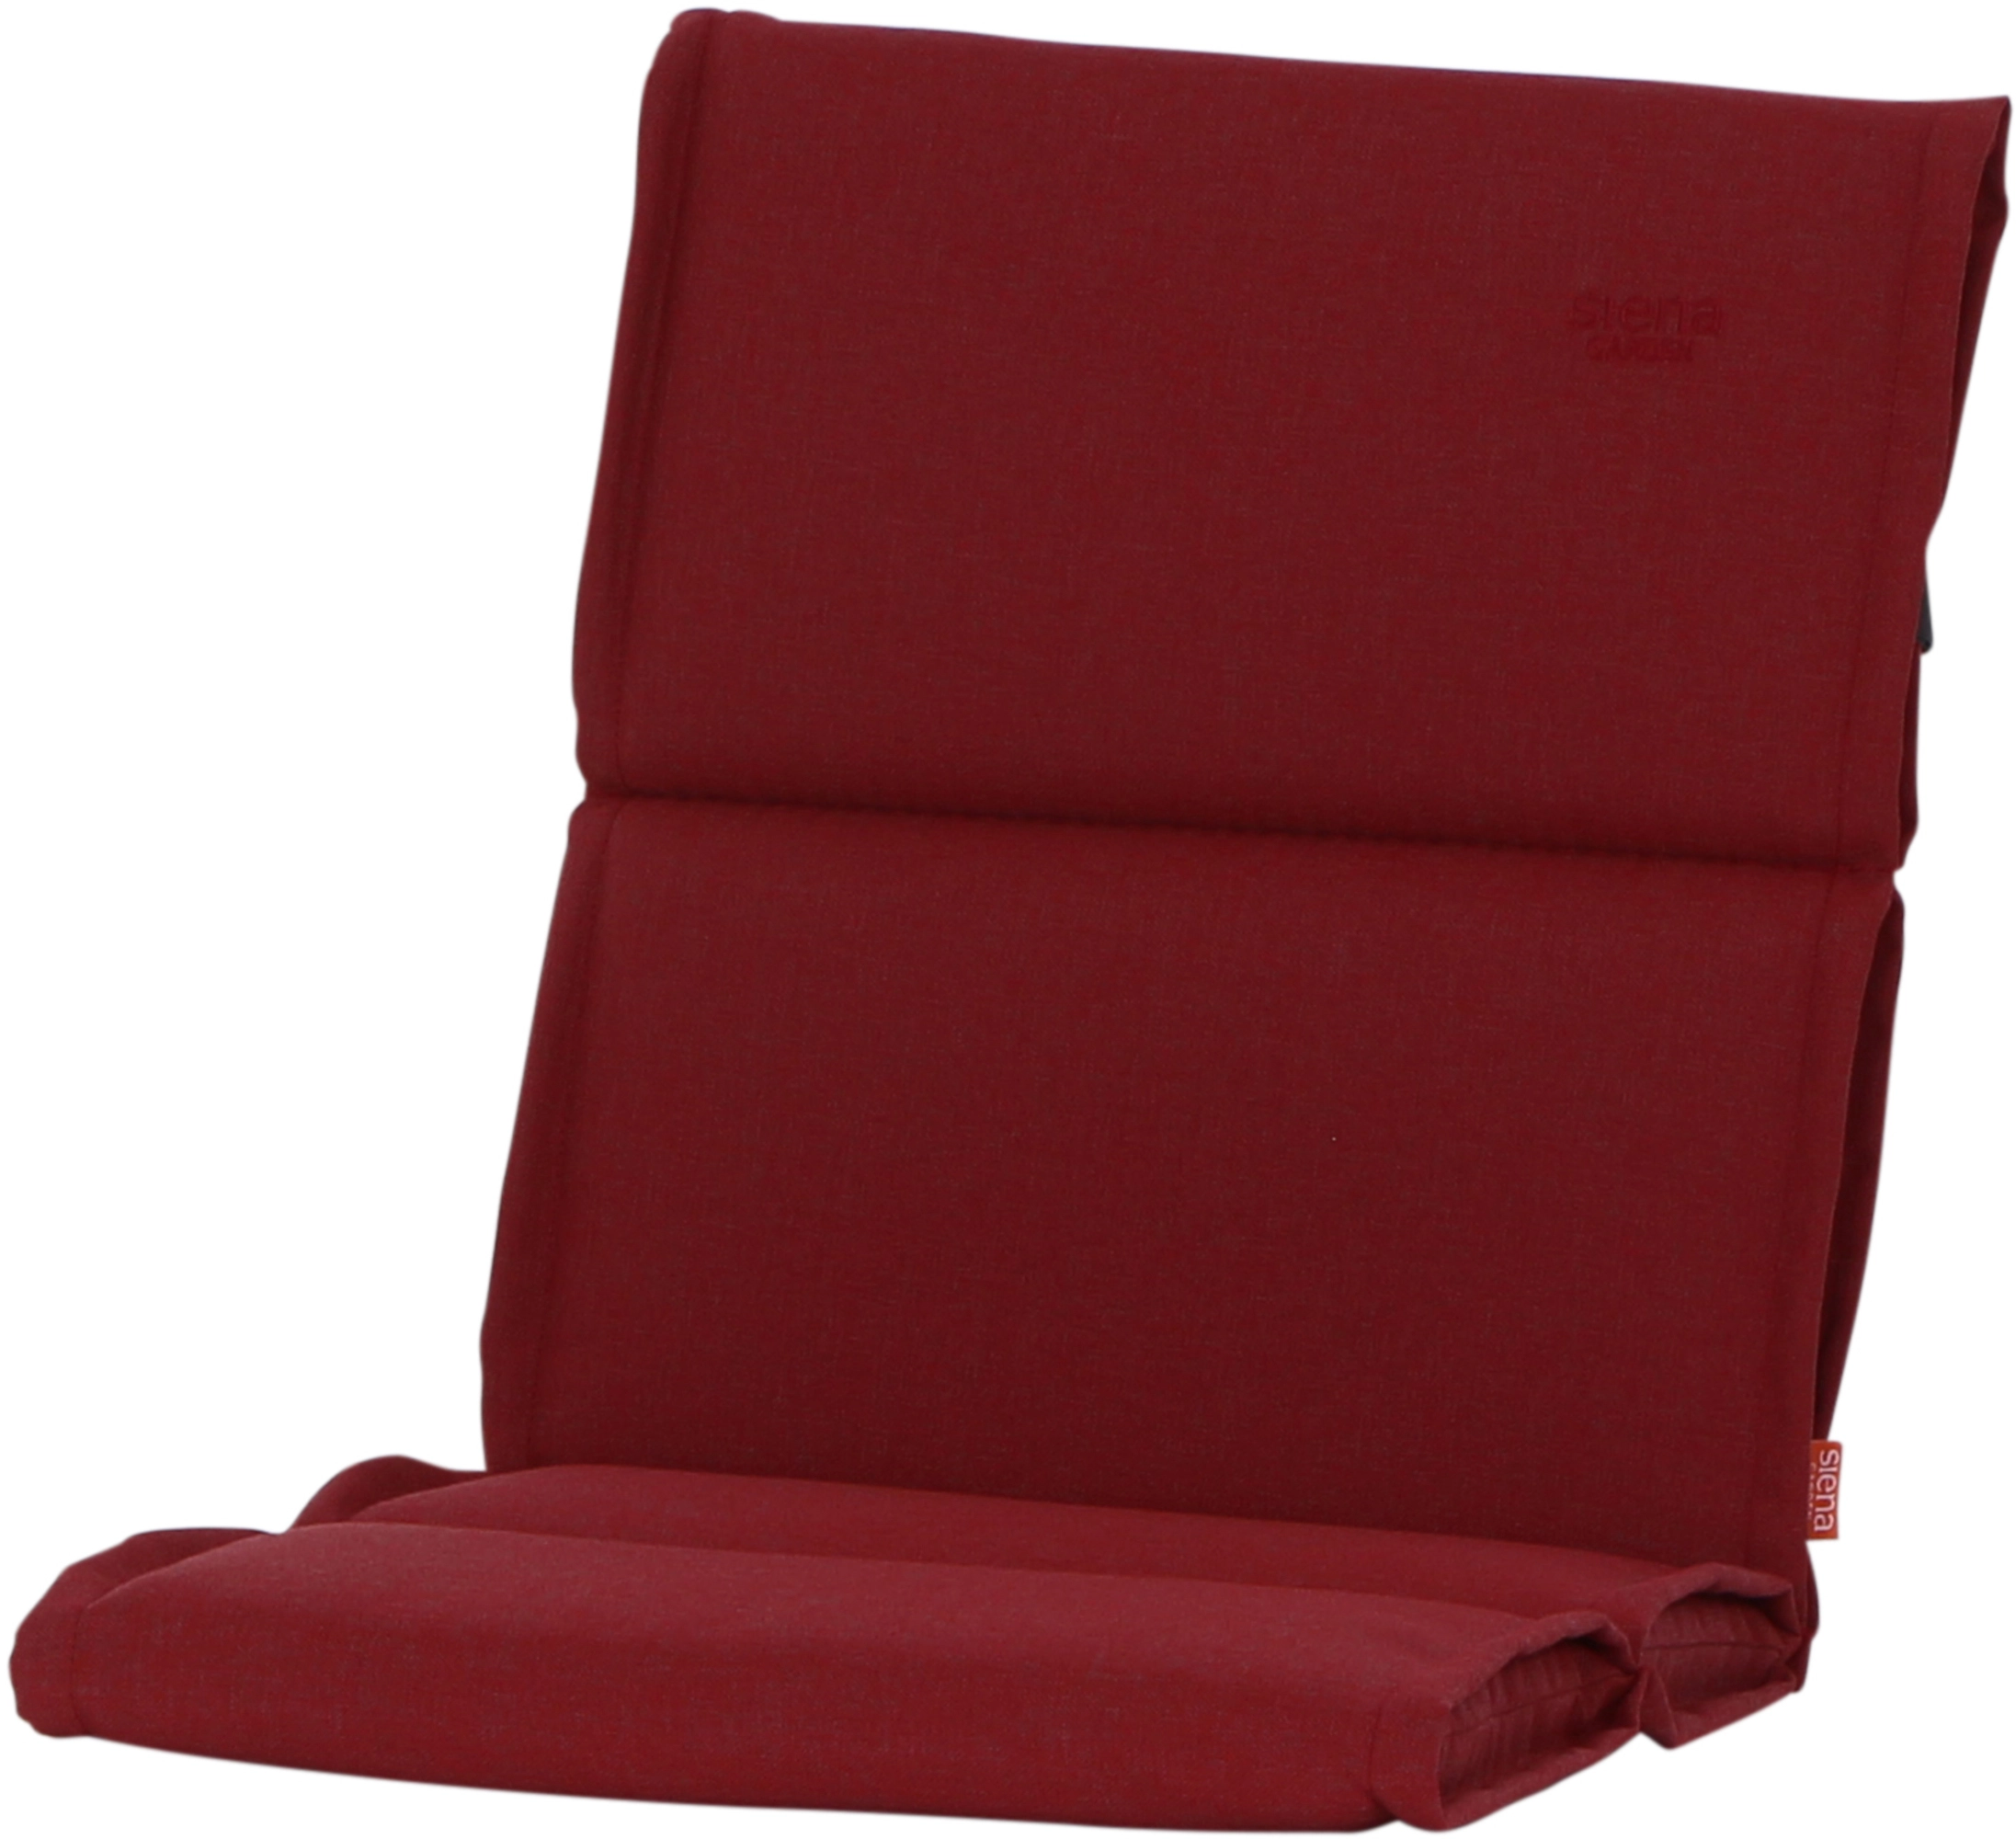 Siena Garden Sesselauflage Stella 96 cm x 46 cm x 3 cm Rot kaufen bei OBI | Sessel-Erhöhungen